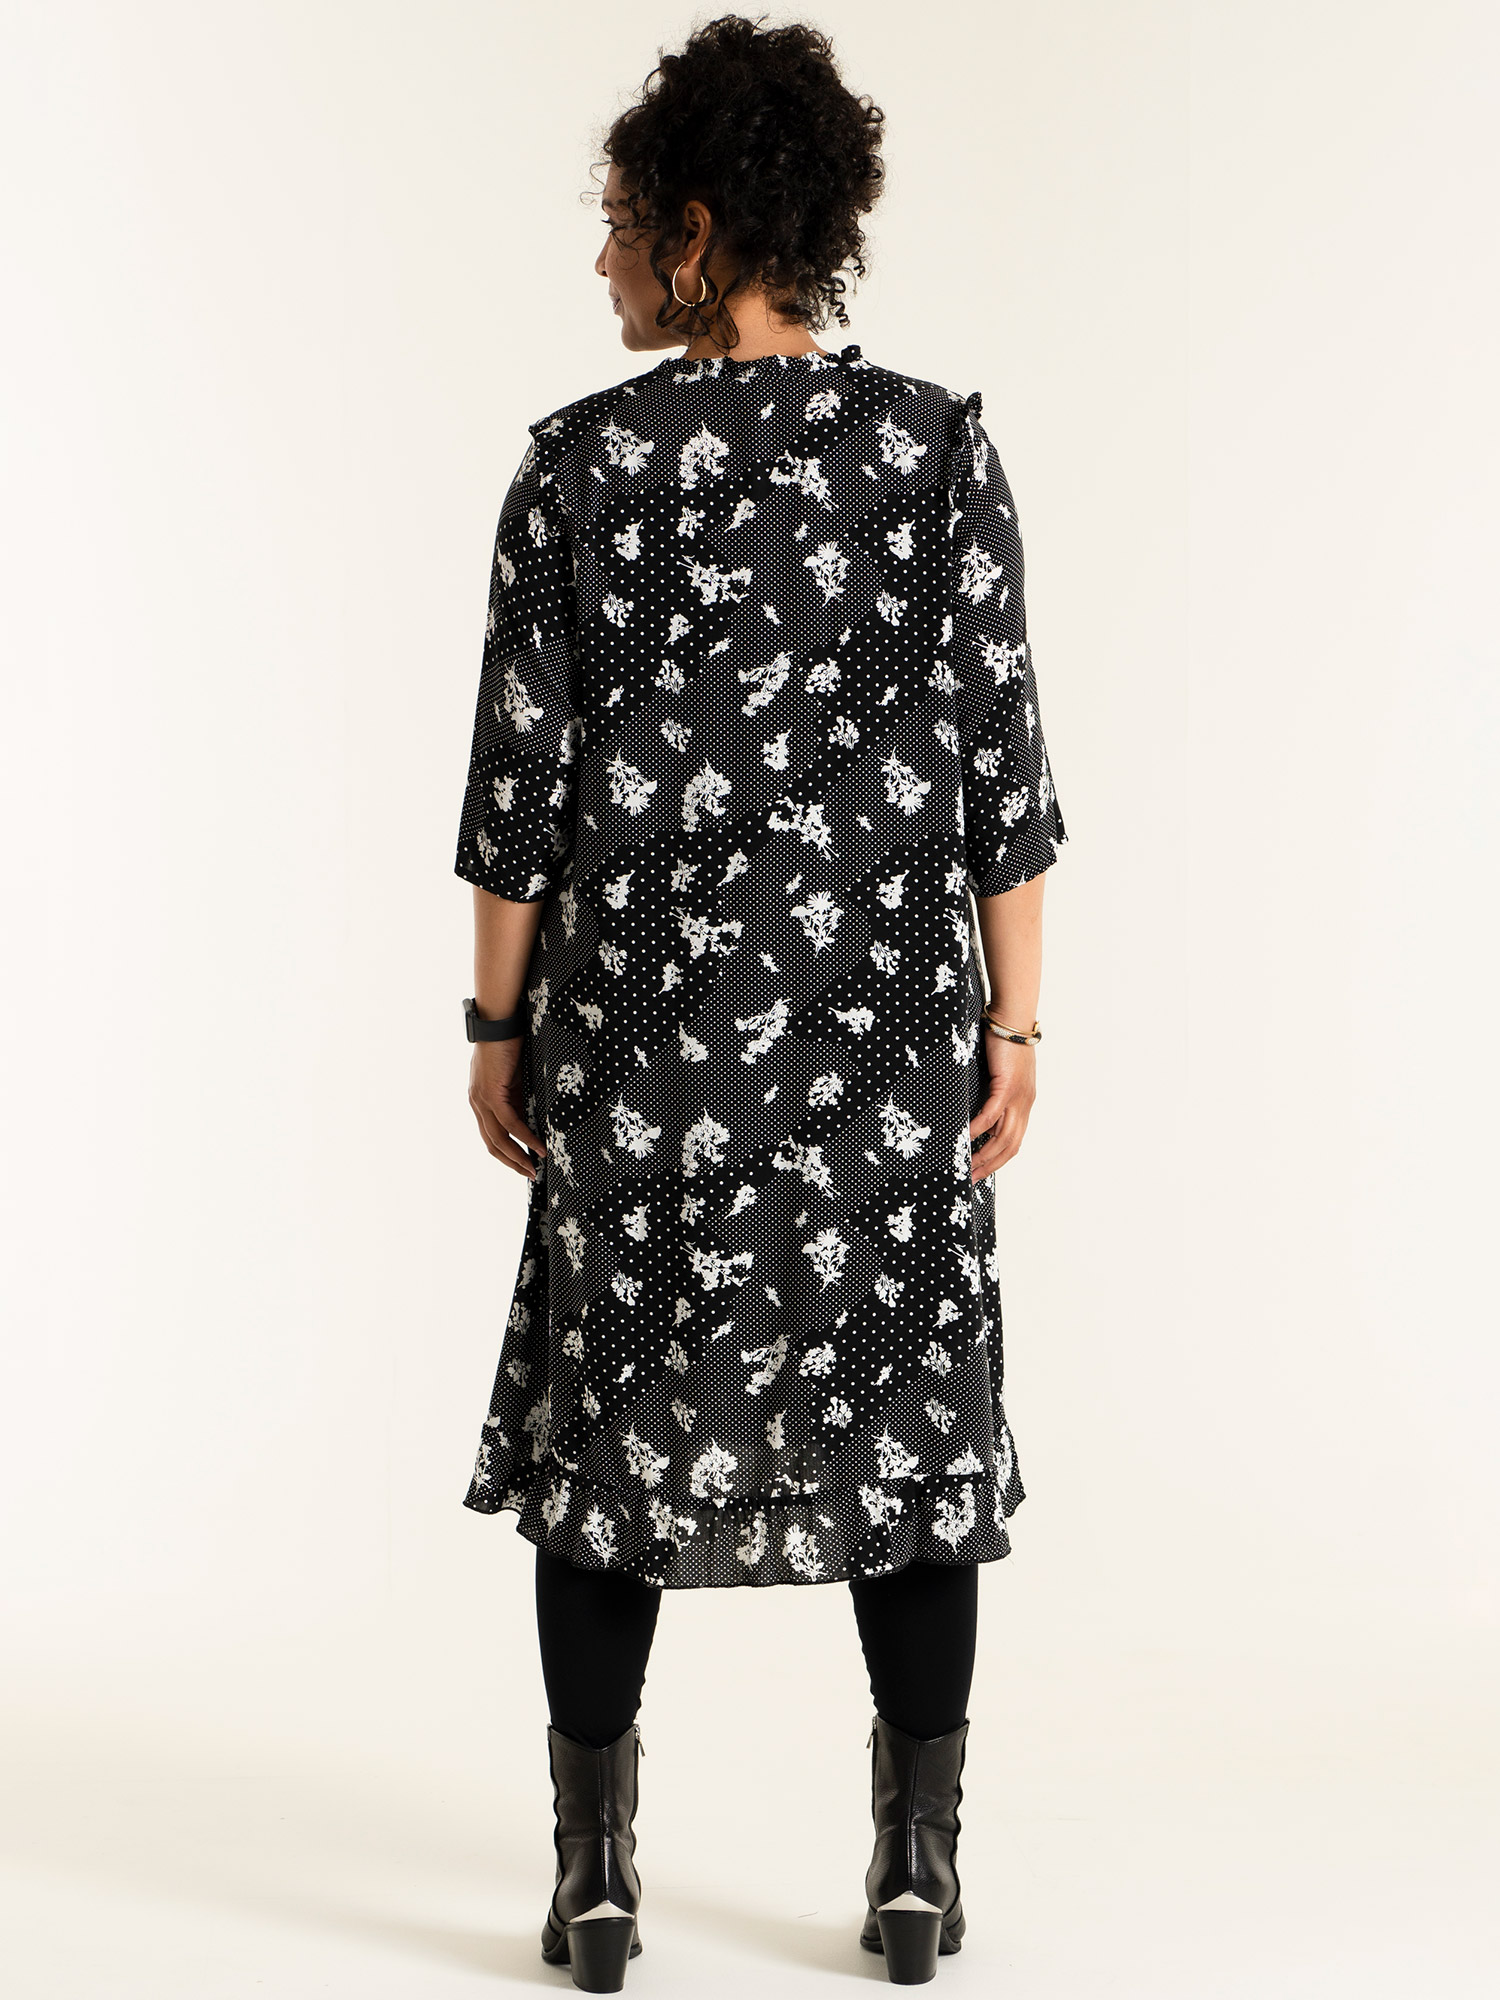 SALLY - Sort skjorte kjole i viskose med hvid mønster fra Studio